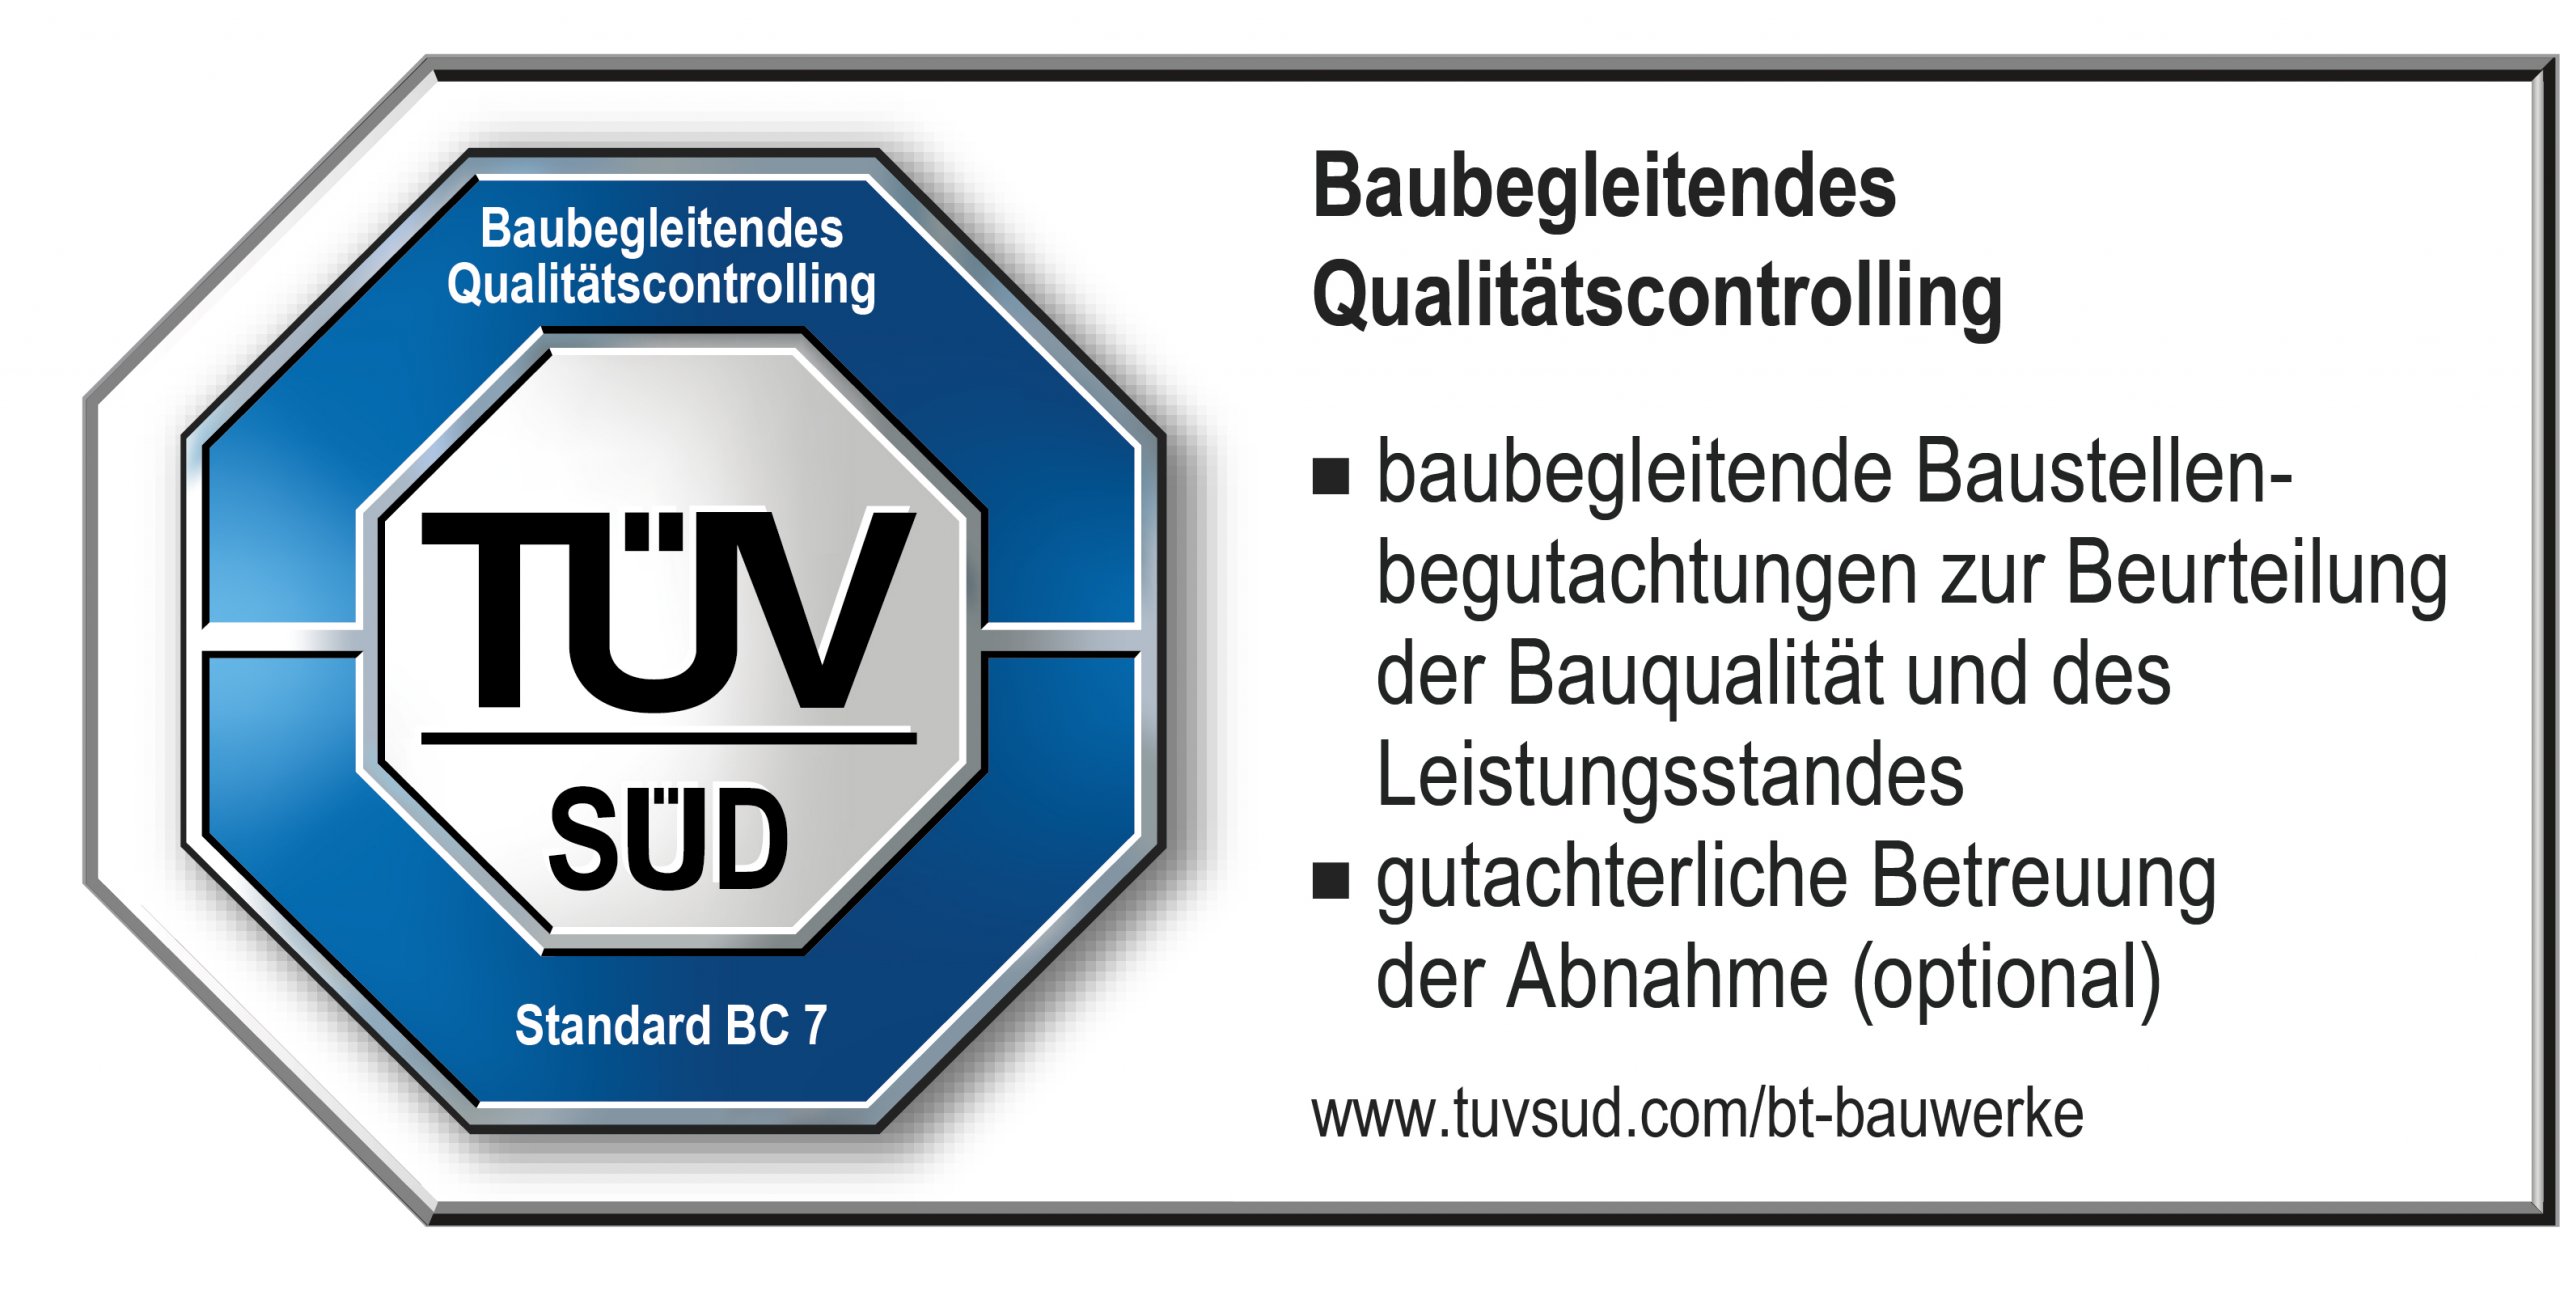 PlanQuadrat Stuttgart | Tubizer Straße in Korntal | TÜB SUED - baubegleitendes Qualitätscontrolling